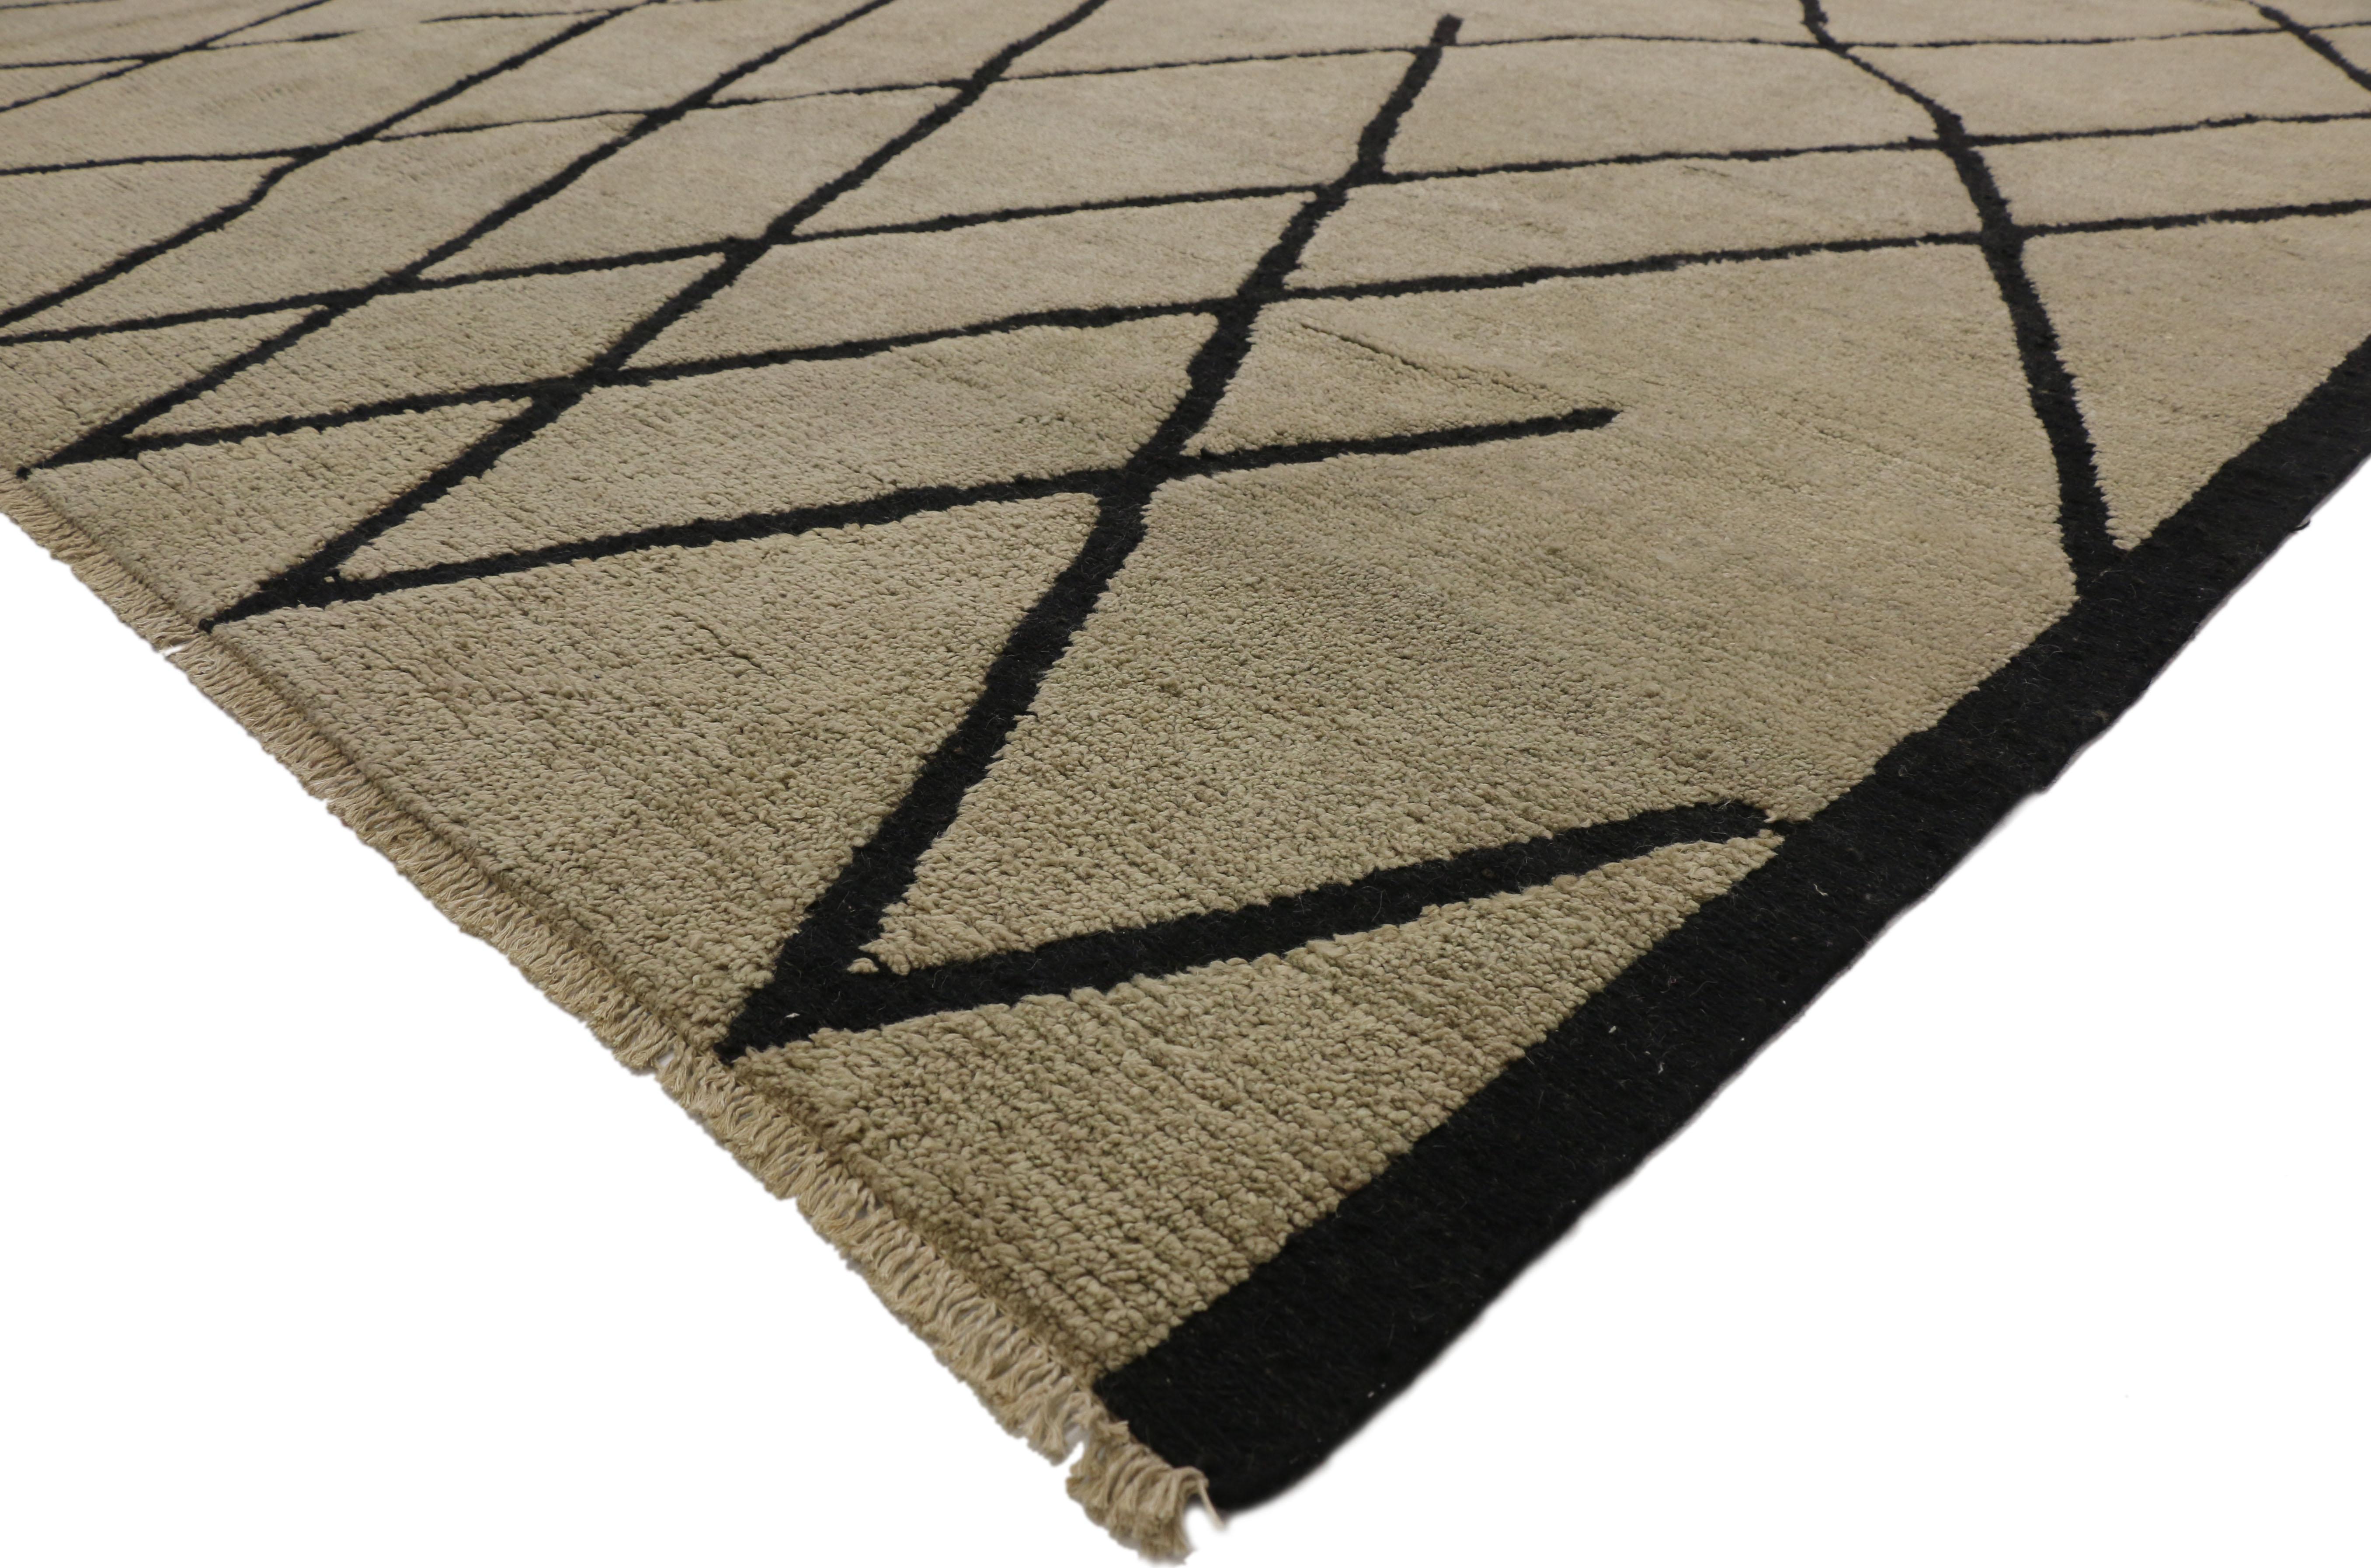 80502 Nouveau tapis marocain contemporain de style moderniste. Ce tapis marocain contemporain en laine nouée à la main présente des lignes noires contrastées qui courent le long de la toile de fond sable-écru. Les lignes noires audacieuses